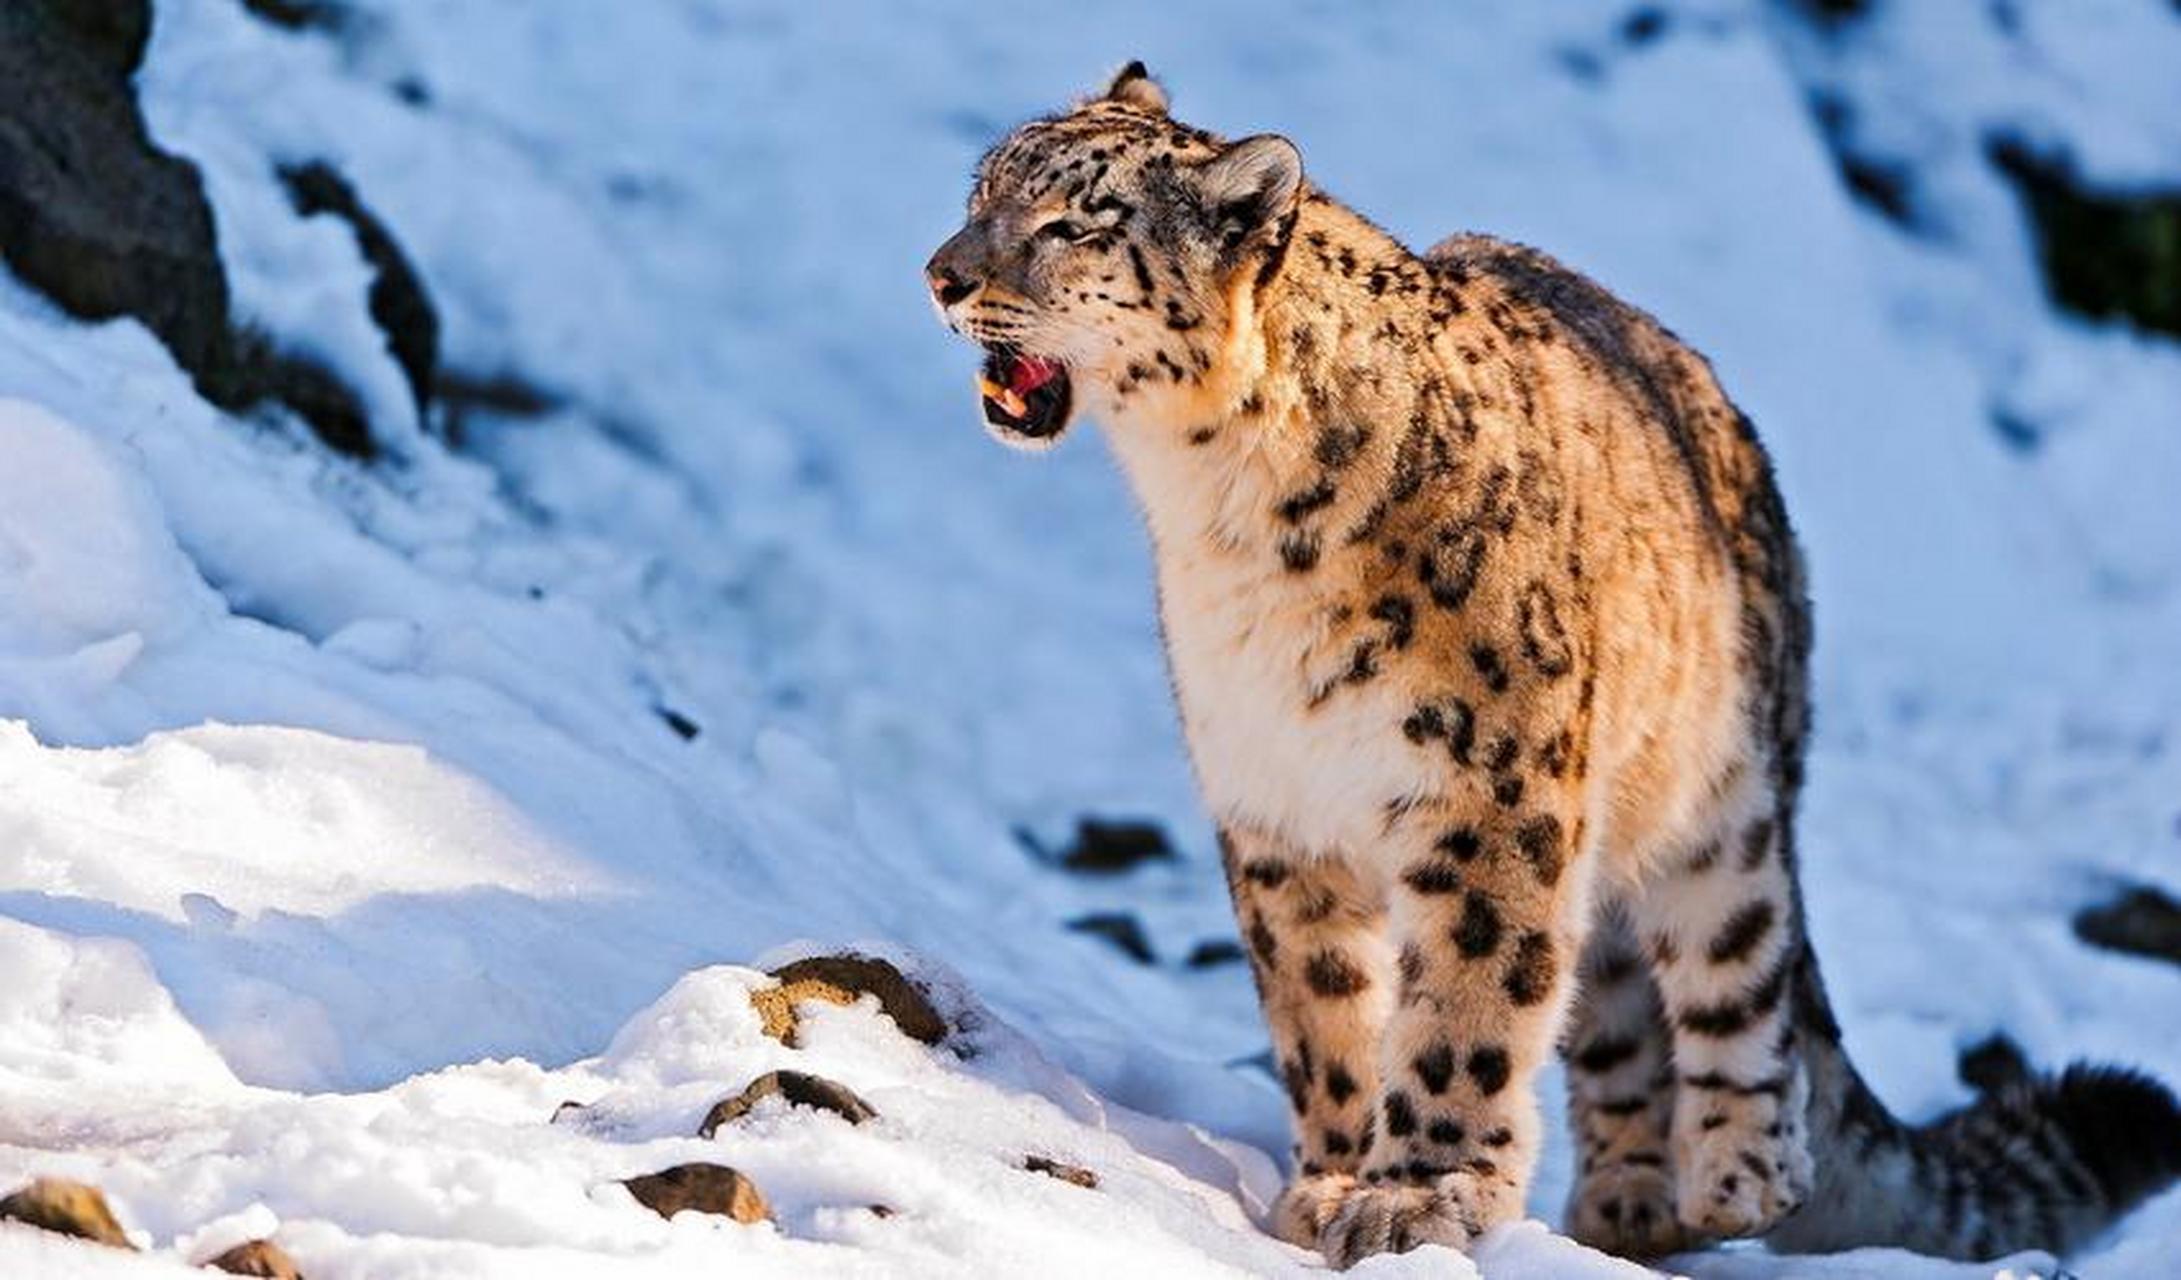 雪豹——雪山之王  雪豹是一种大型猫科动物,常在雪线附近和雪地间